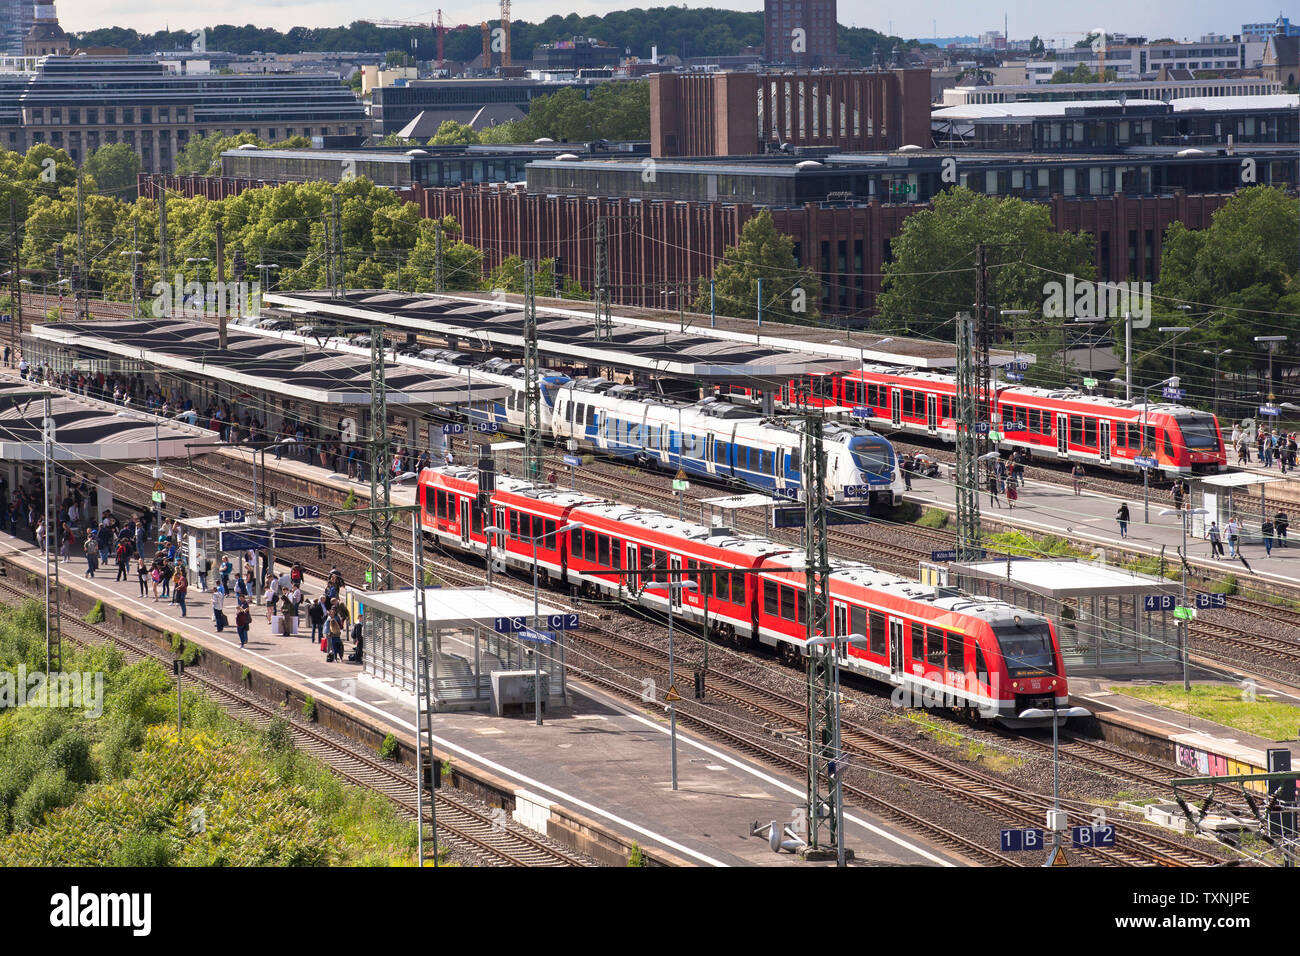 Vue de la gare Deutz, Cologne, Allemagne. Blick auf den Bahnhof Deutz, Köln, Deutschland. Banque D'Images